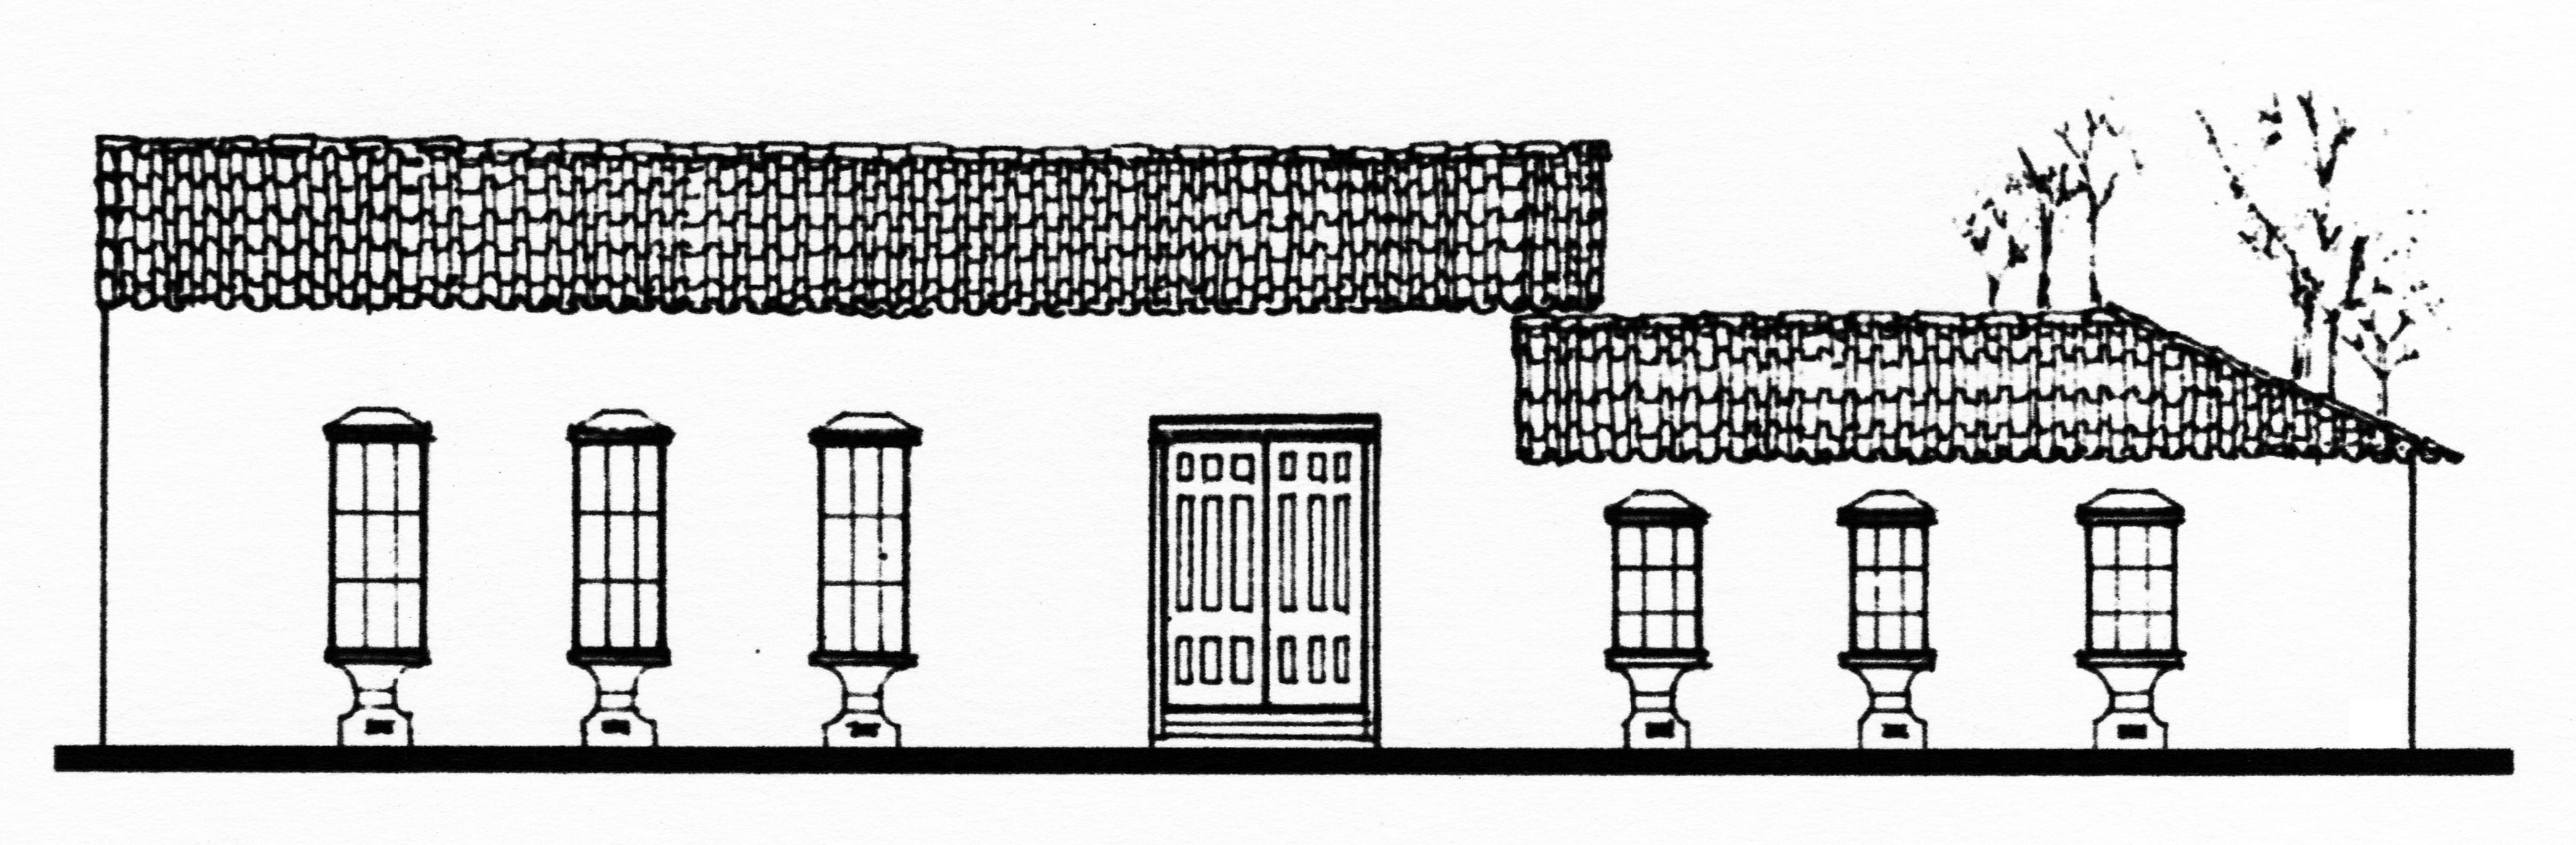 Fachada principal del edificio de la Factoría de Tabacos, ubicado en la esquina sureste del cruce de las actuales avenidas Central y calle 2. Interpretación y dibujo del arquitecto Edgar Cordero Cerdas.  